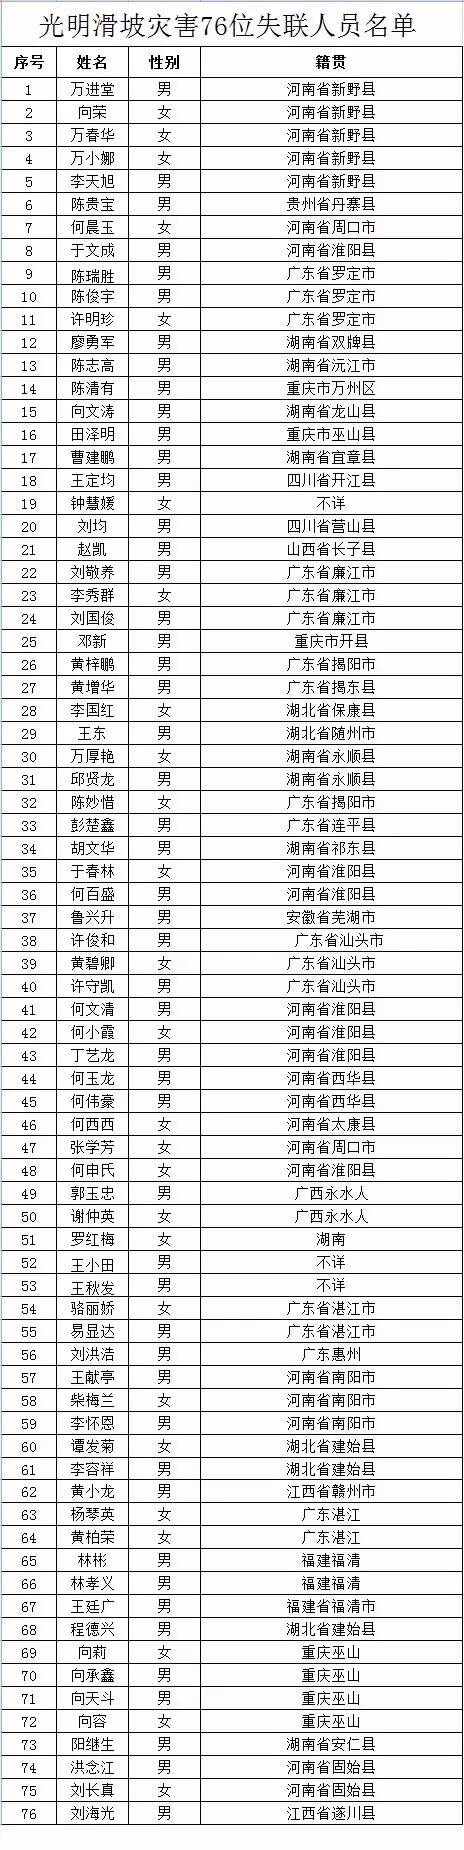 深圳公布山体滑坡失联名单76人中73人身份已核实